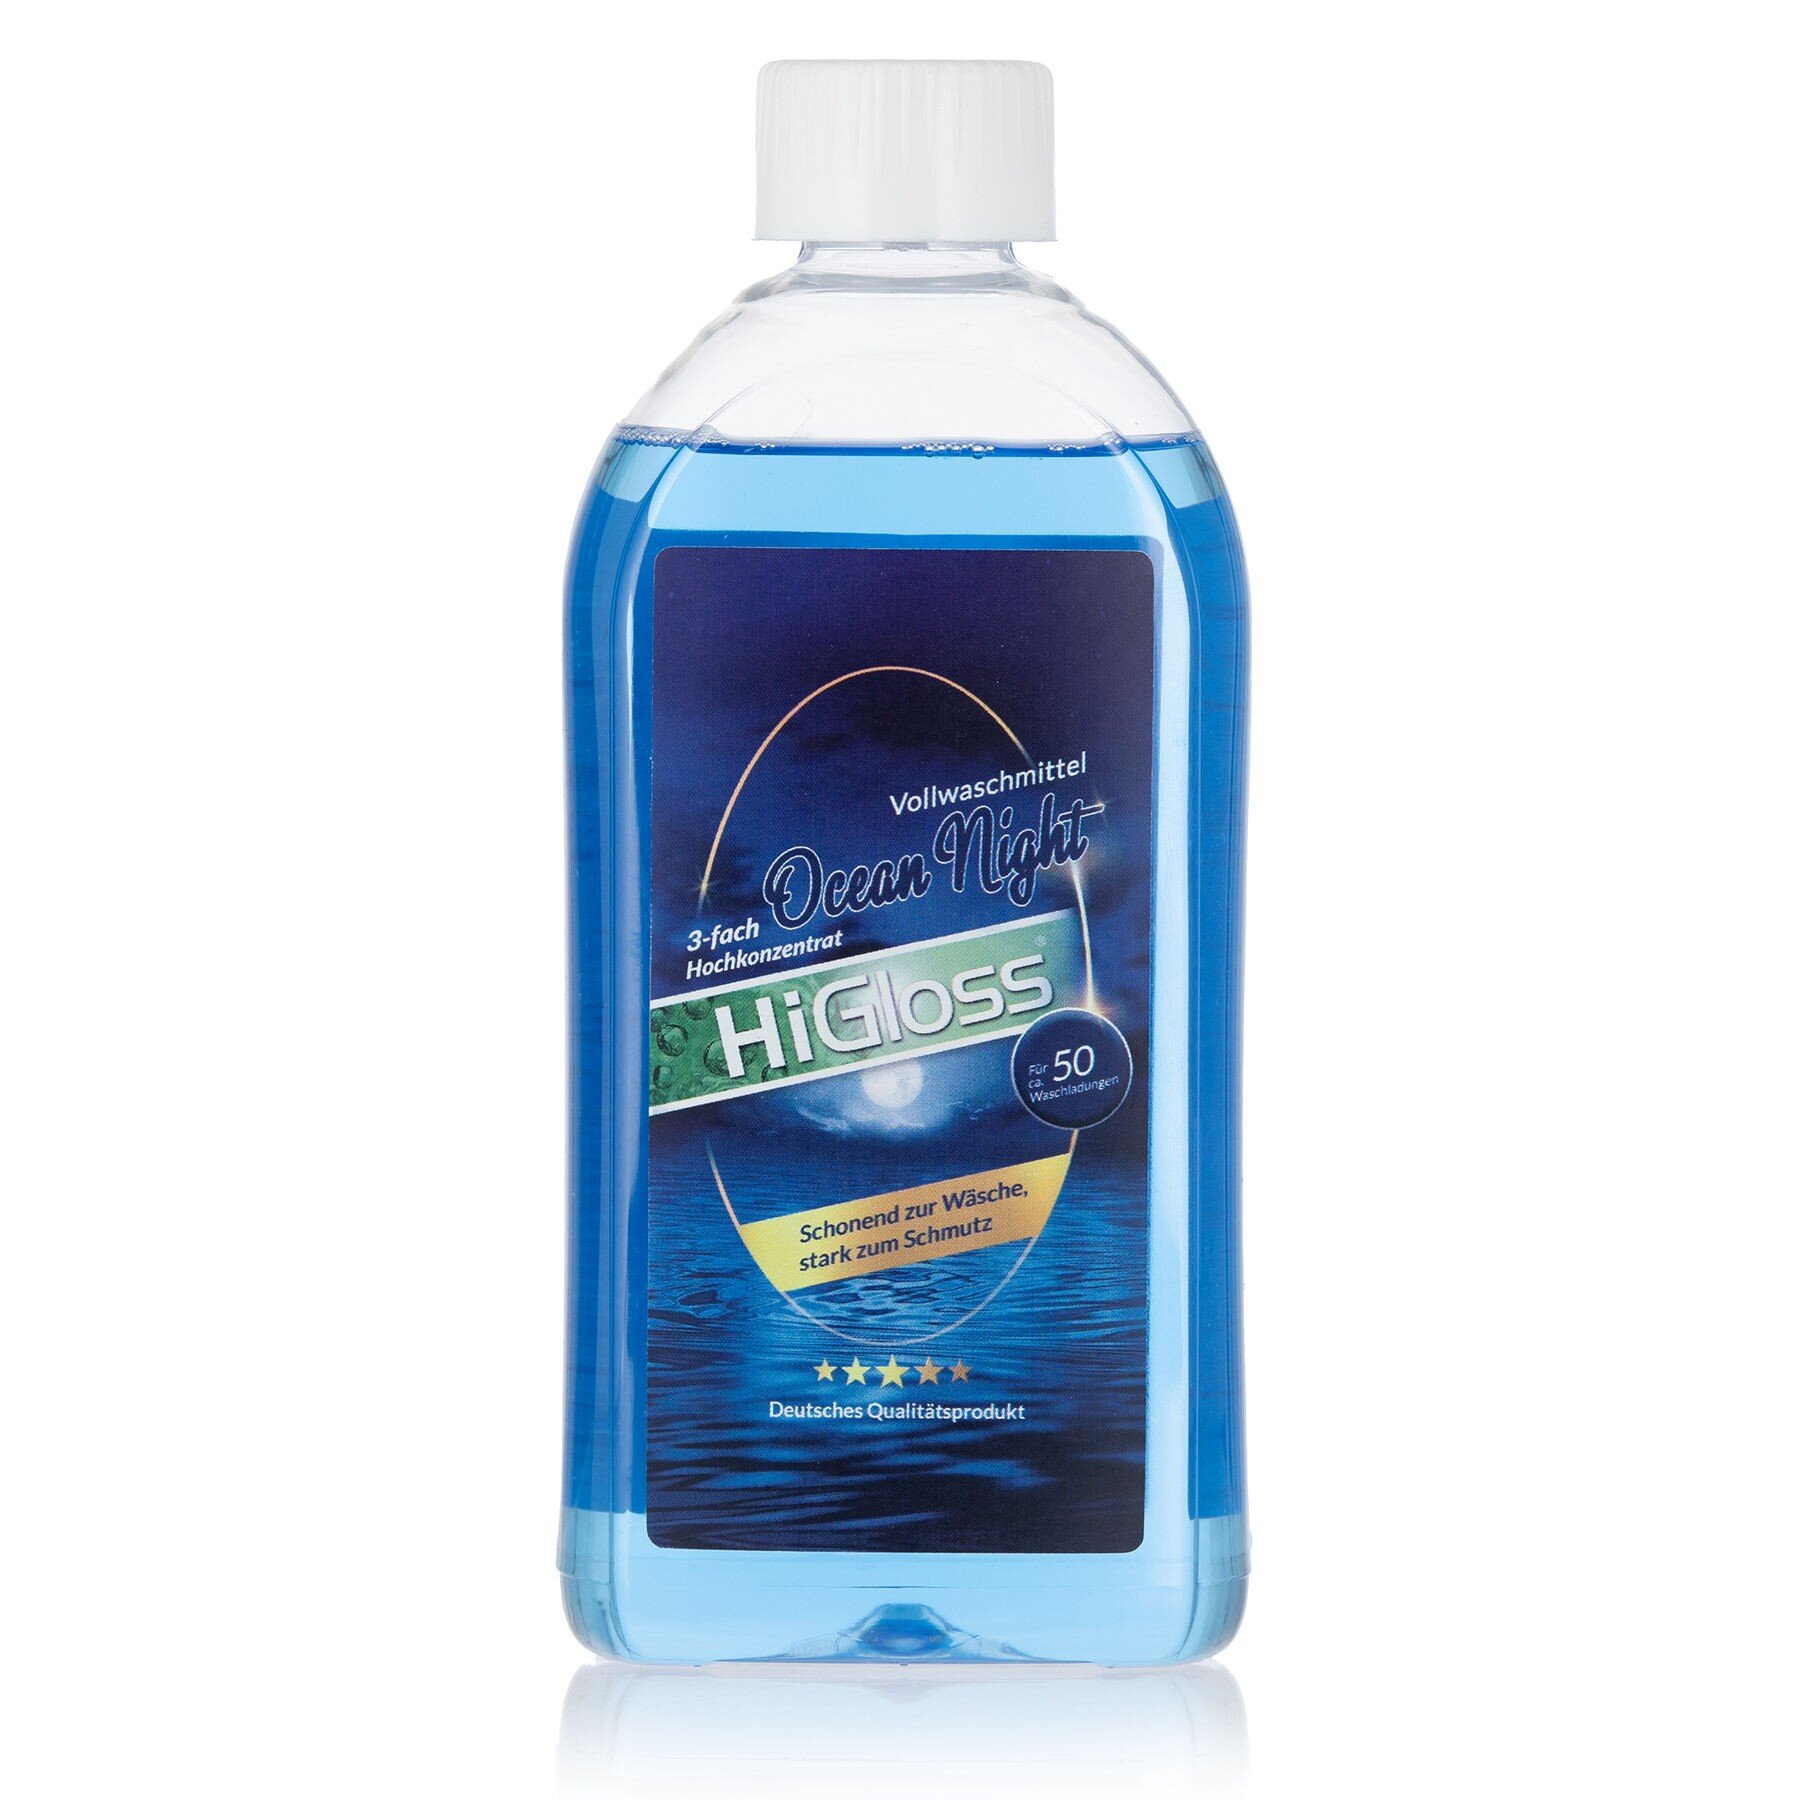 Vollwaschmittel-Set 5 l + 500 ml Flasche - Produkte - HiGloss - Marken